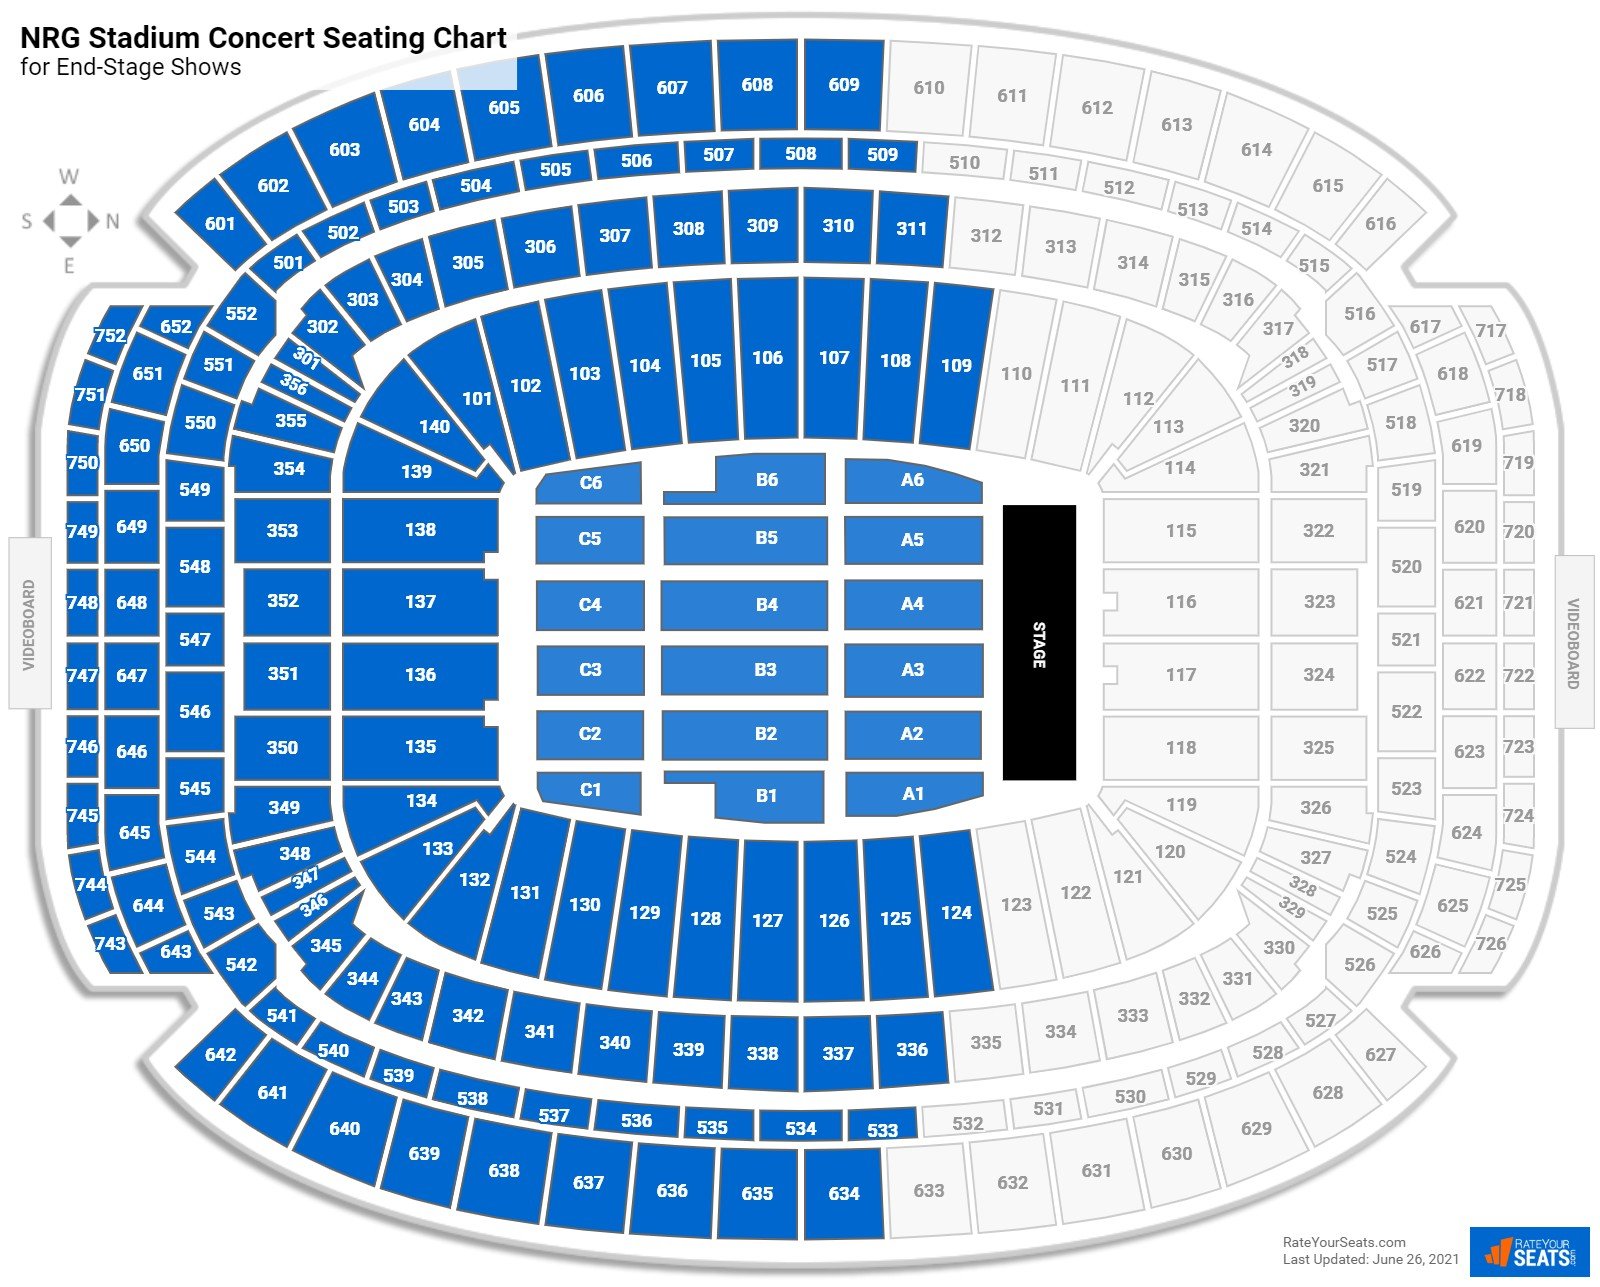 reliant stadium concert seating